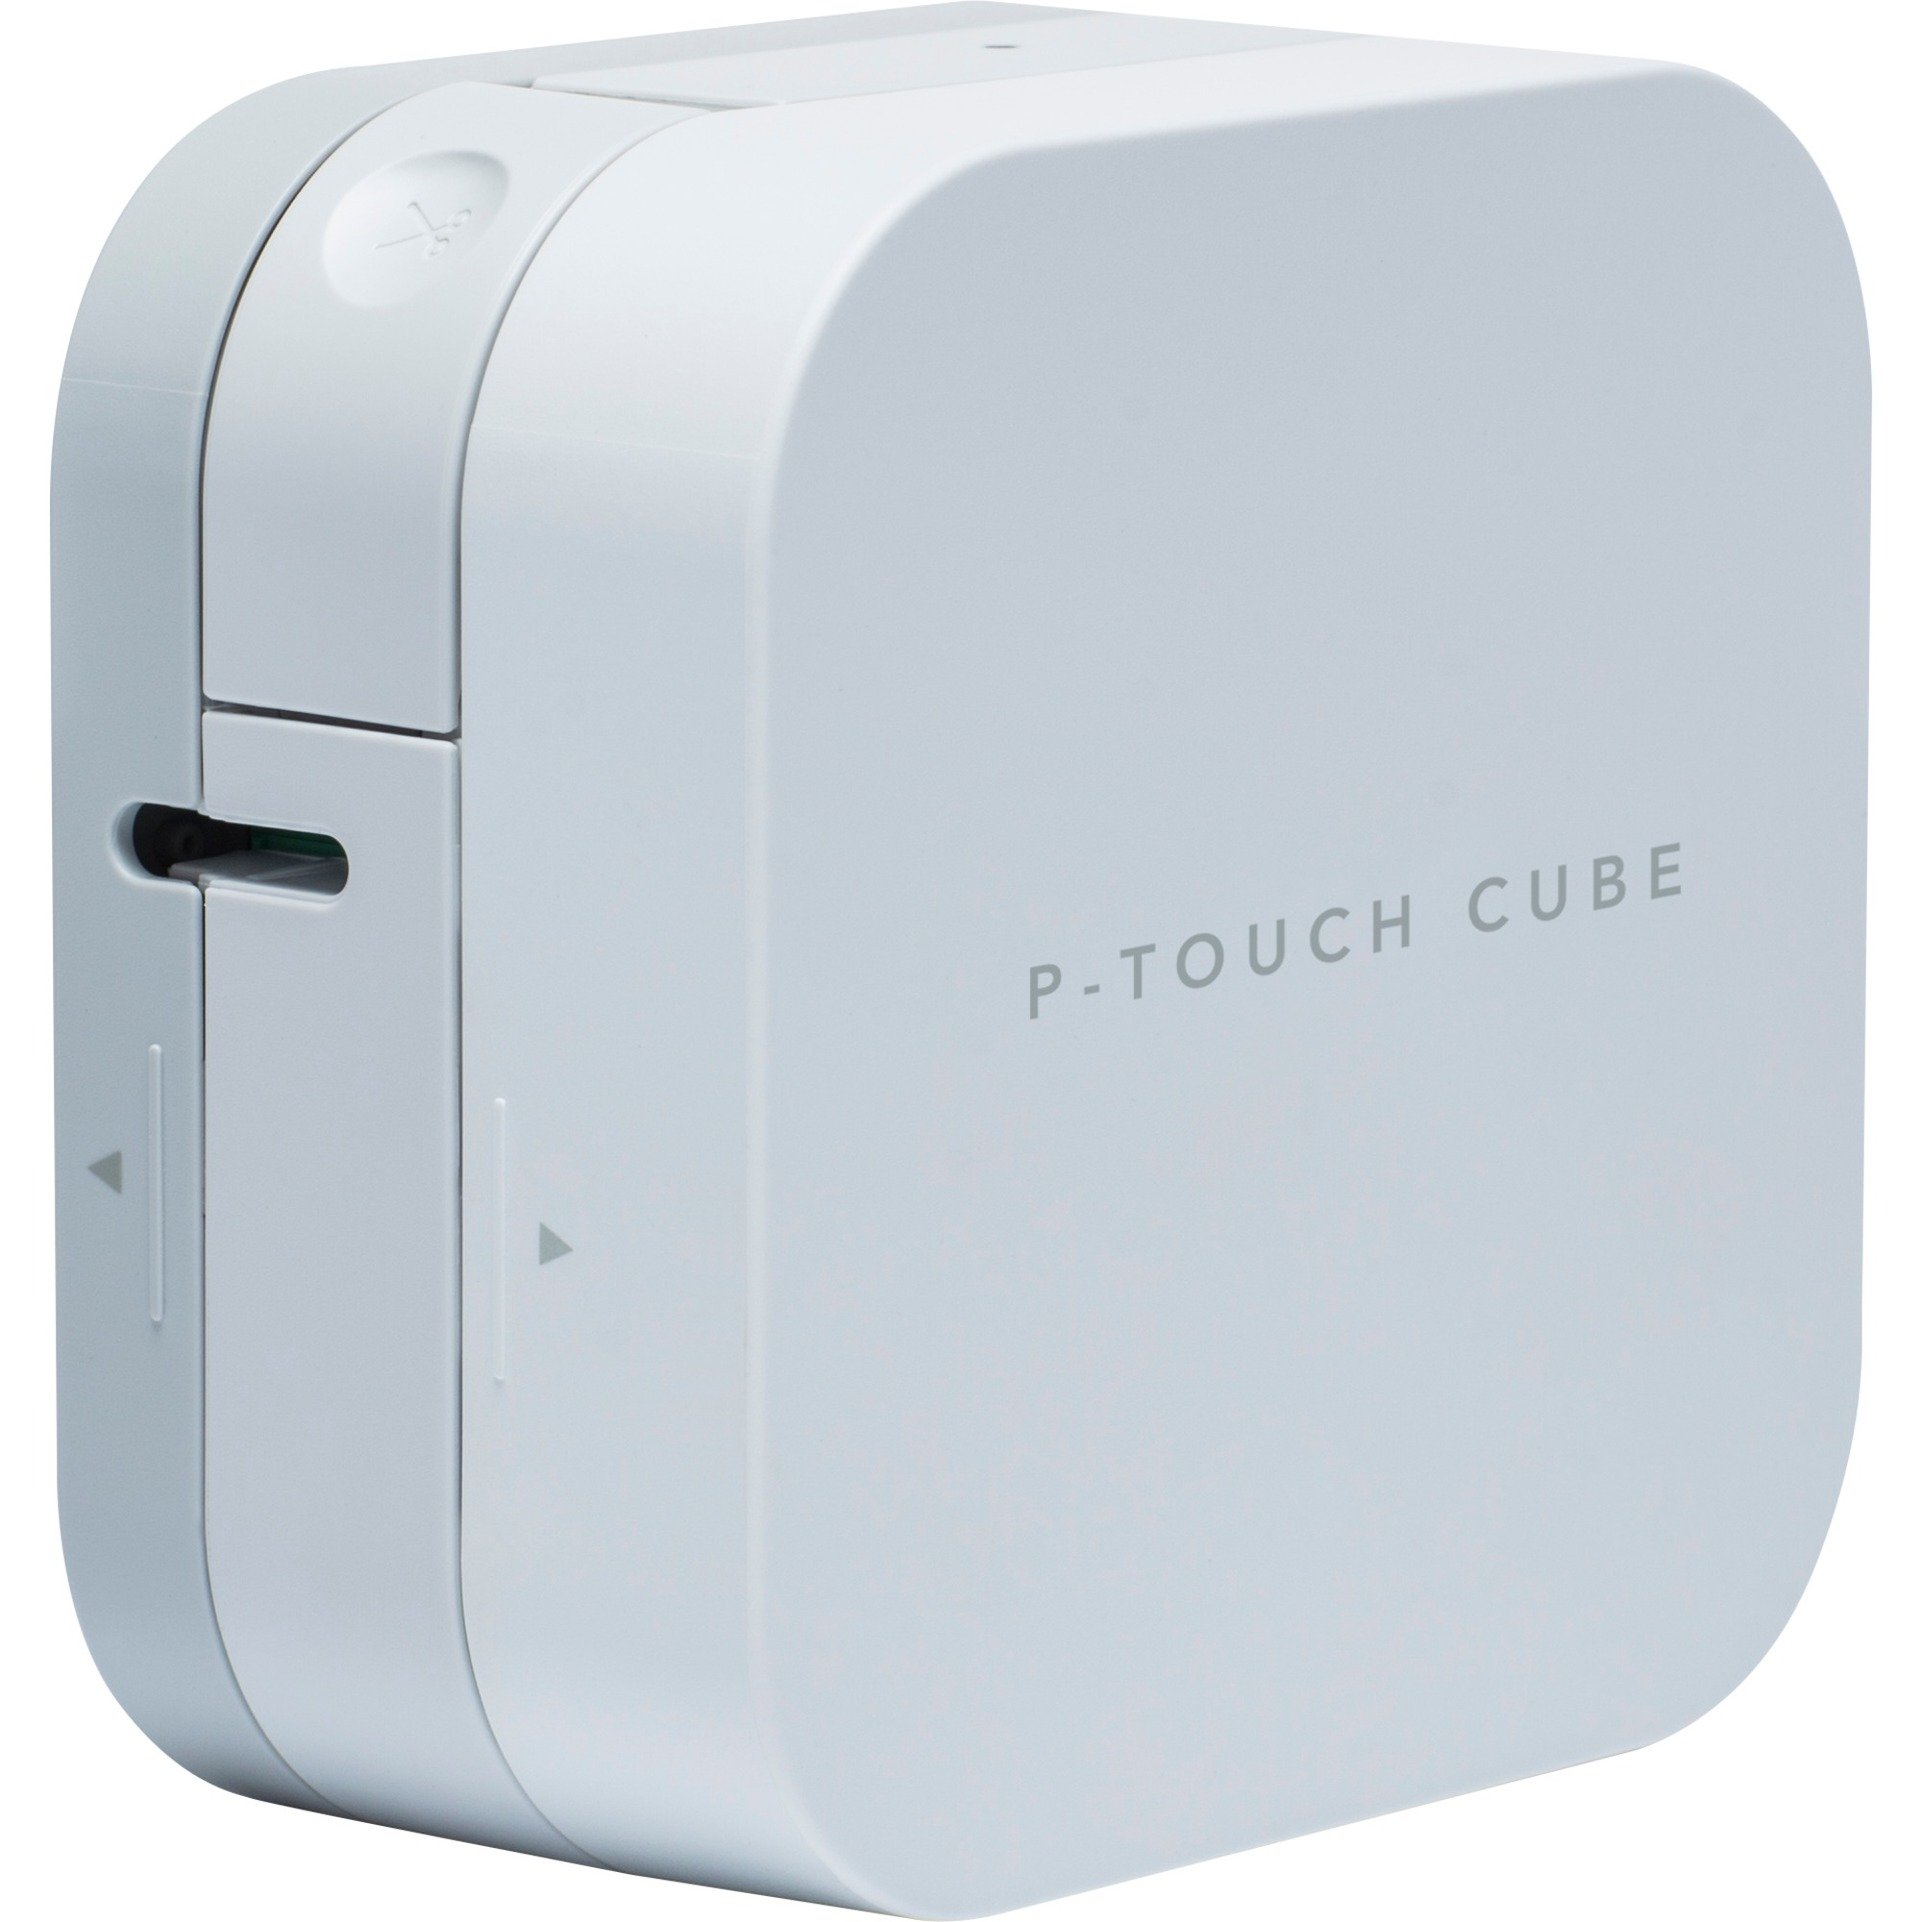 Image of Alternate - P-touch CUBE, Etikettendrucker online einkaufen bei Alternate